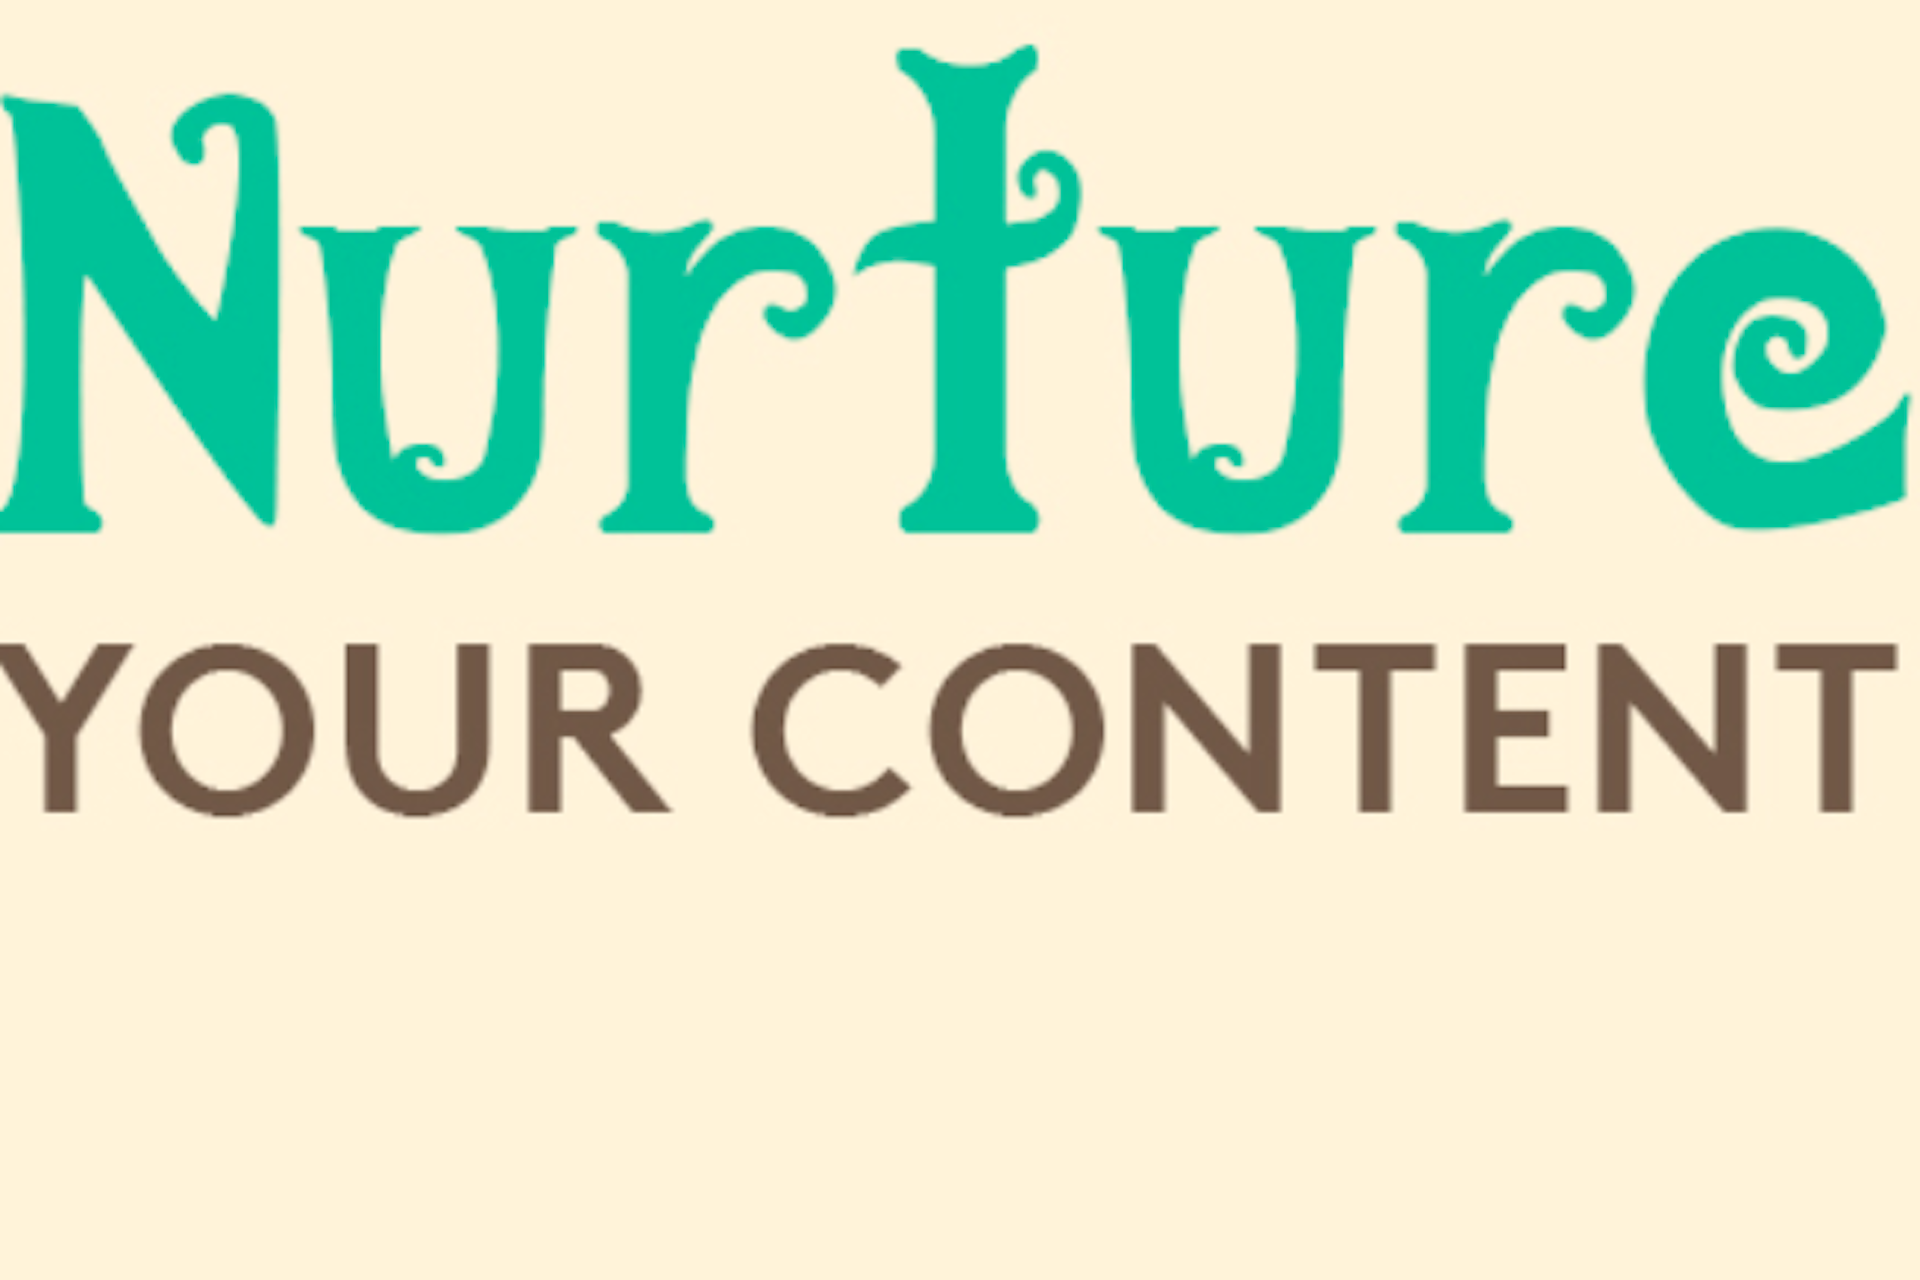 Nurture your content title image